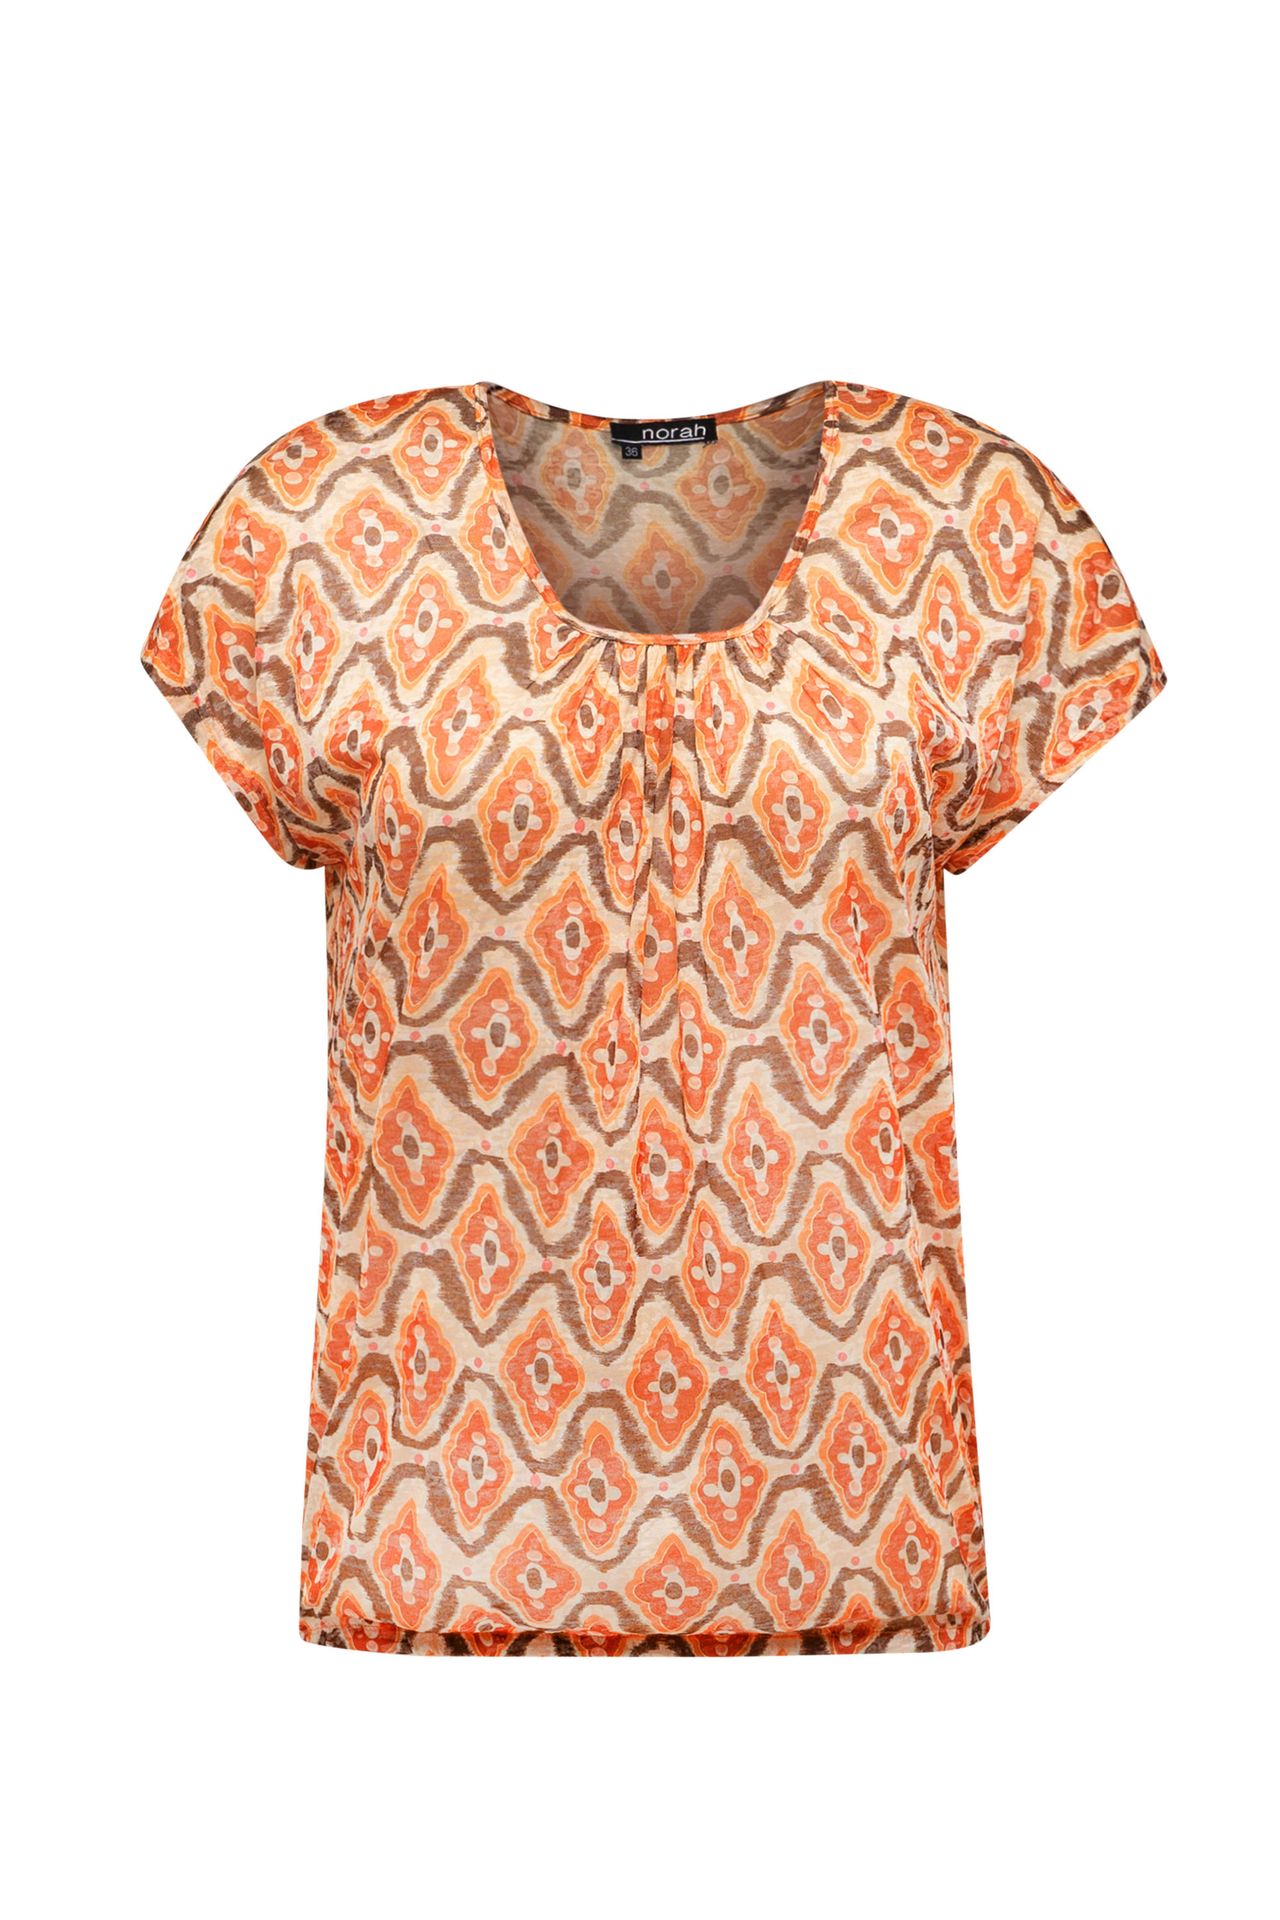 Norah Shirt met grafische print brown multicolor 212976-220